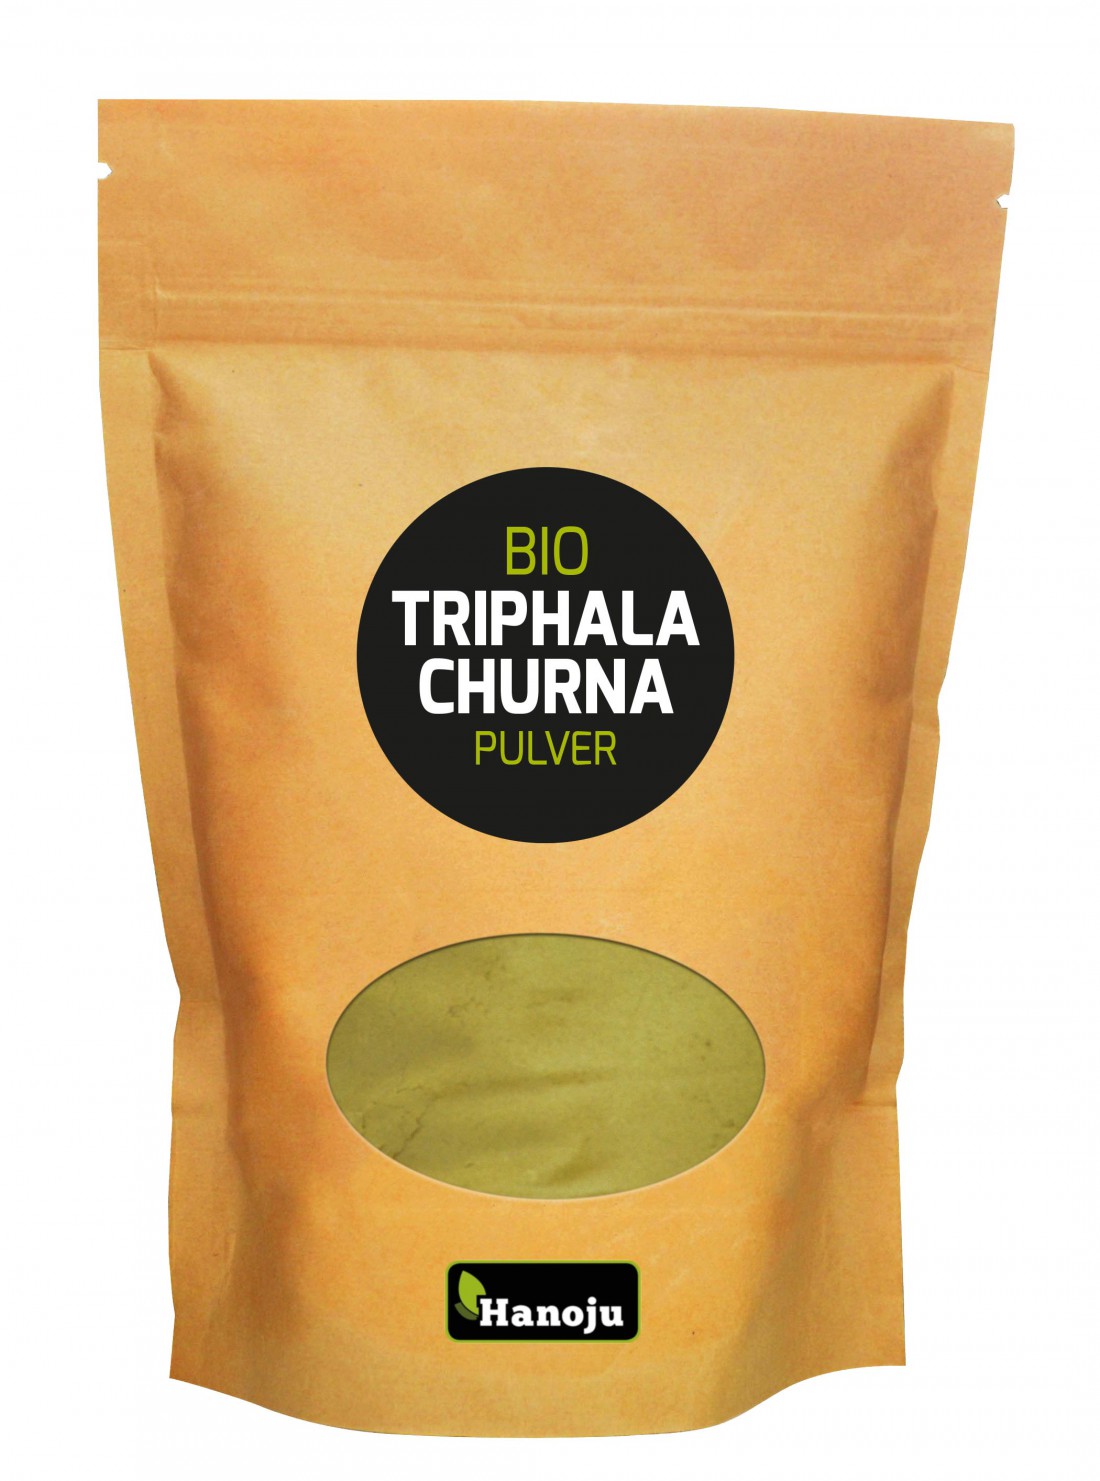 Triphala churna